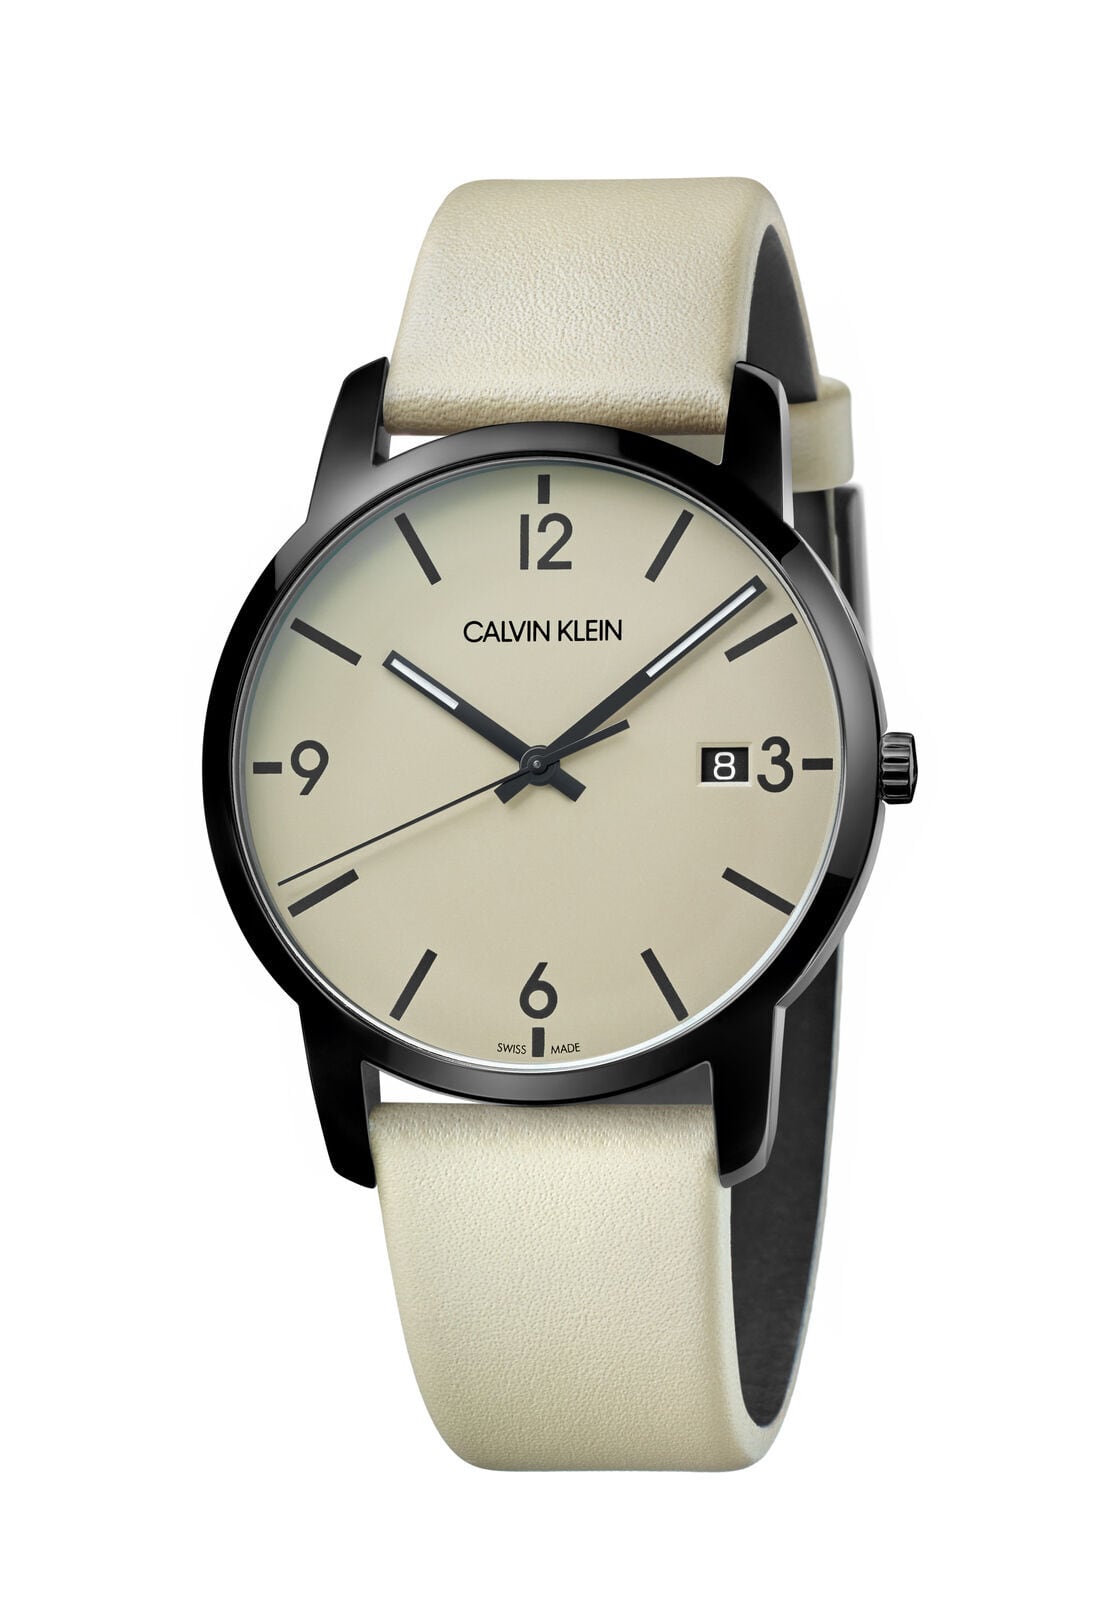 関税・送料込】Calvin Klein メンズ K2G2G4GK シティ ブラウンダイヤル 43mm レザー 腕時計